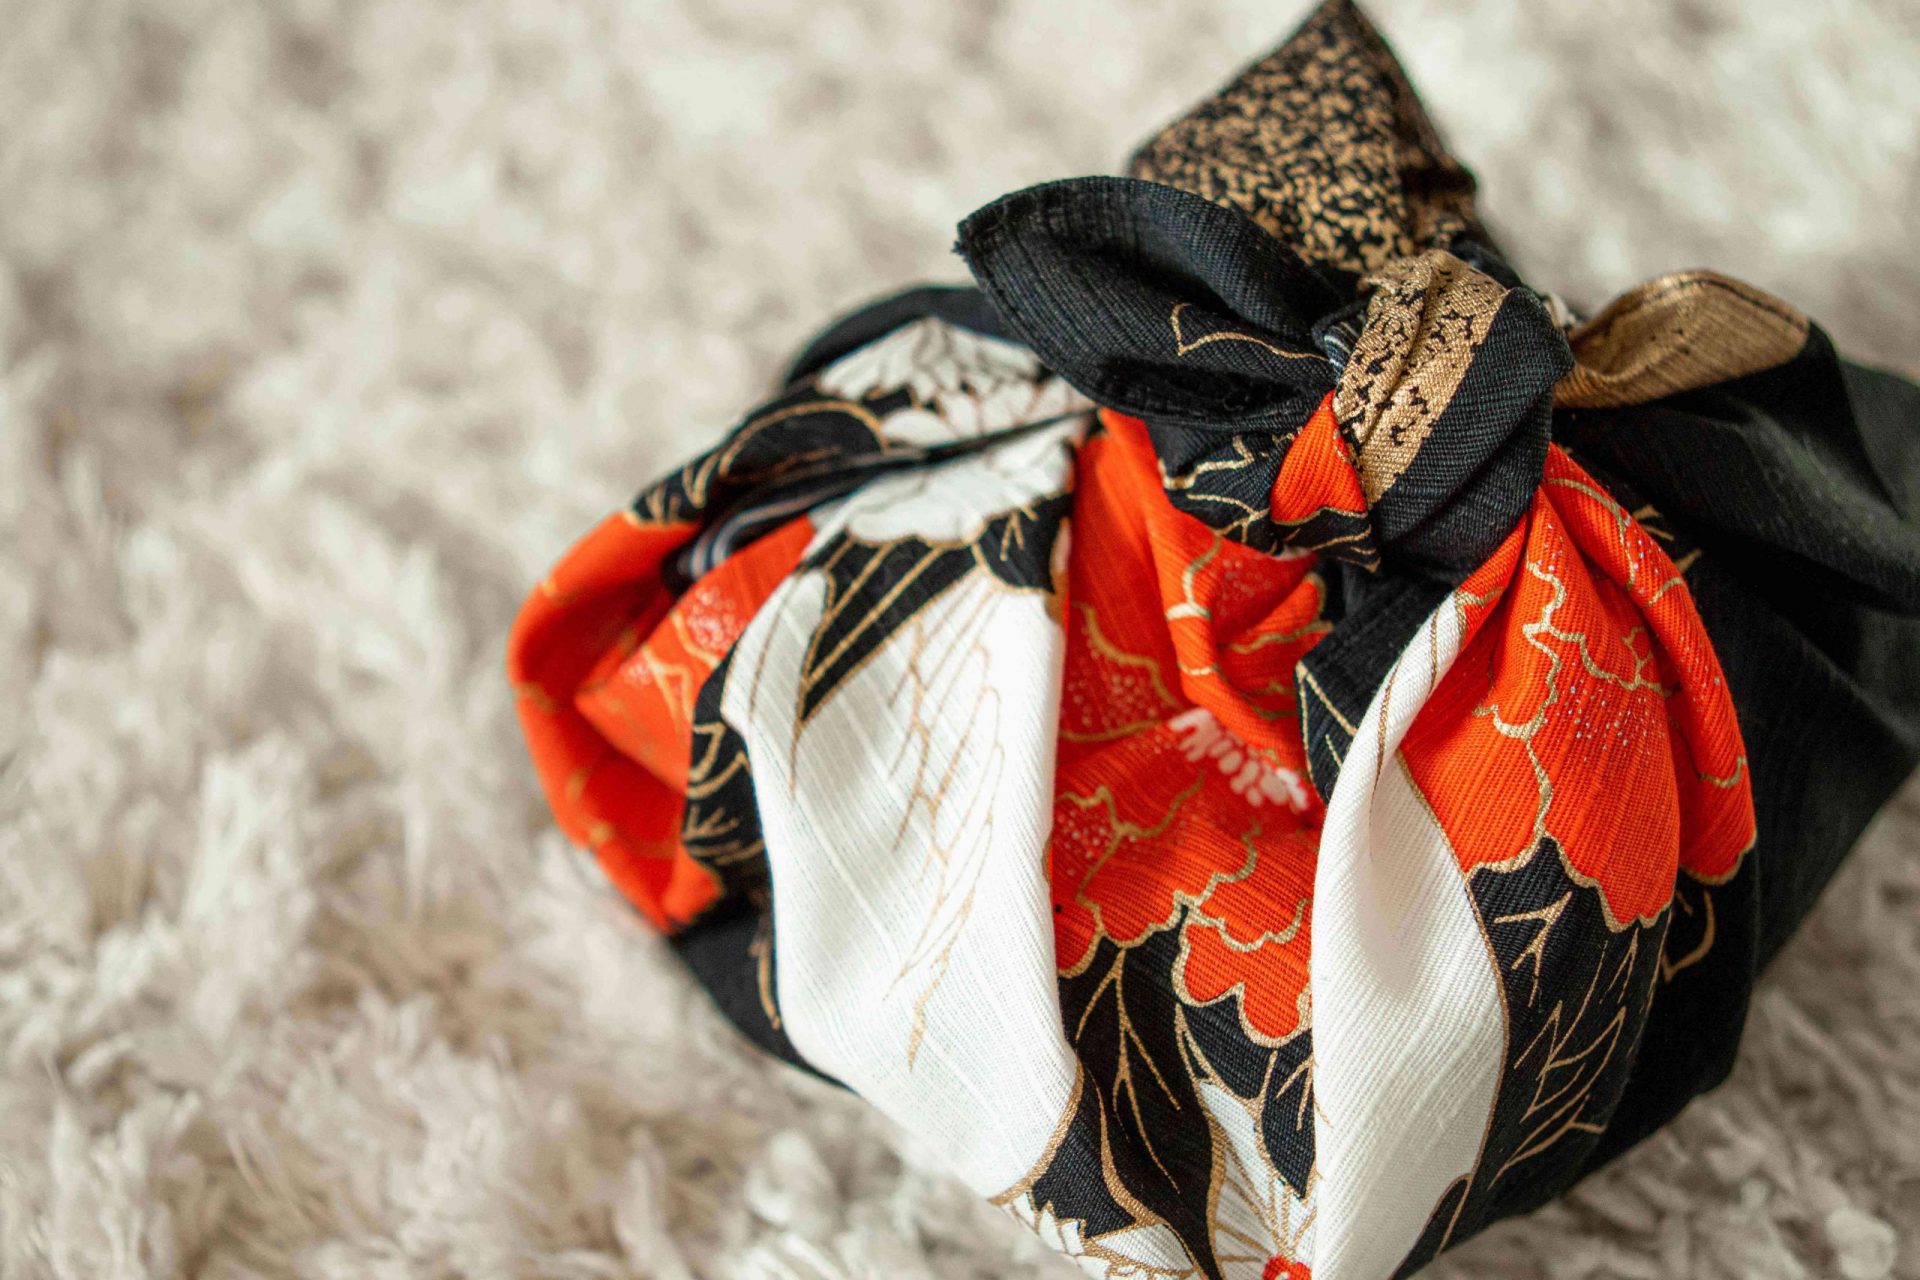 caja de regalo envuelta con tela de colores según el método japonés furoshiki